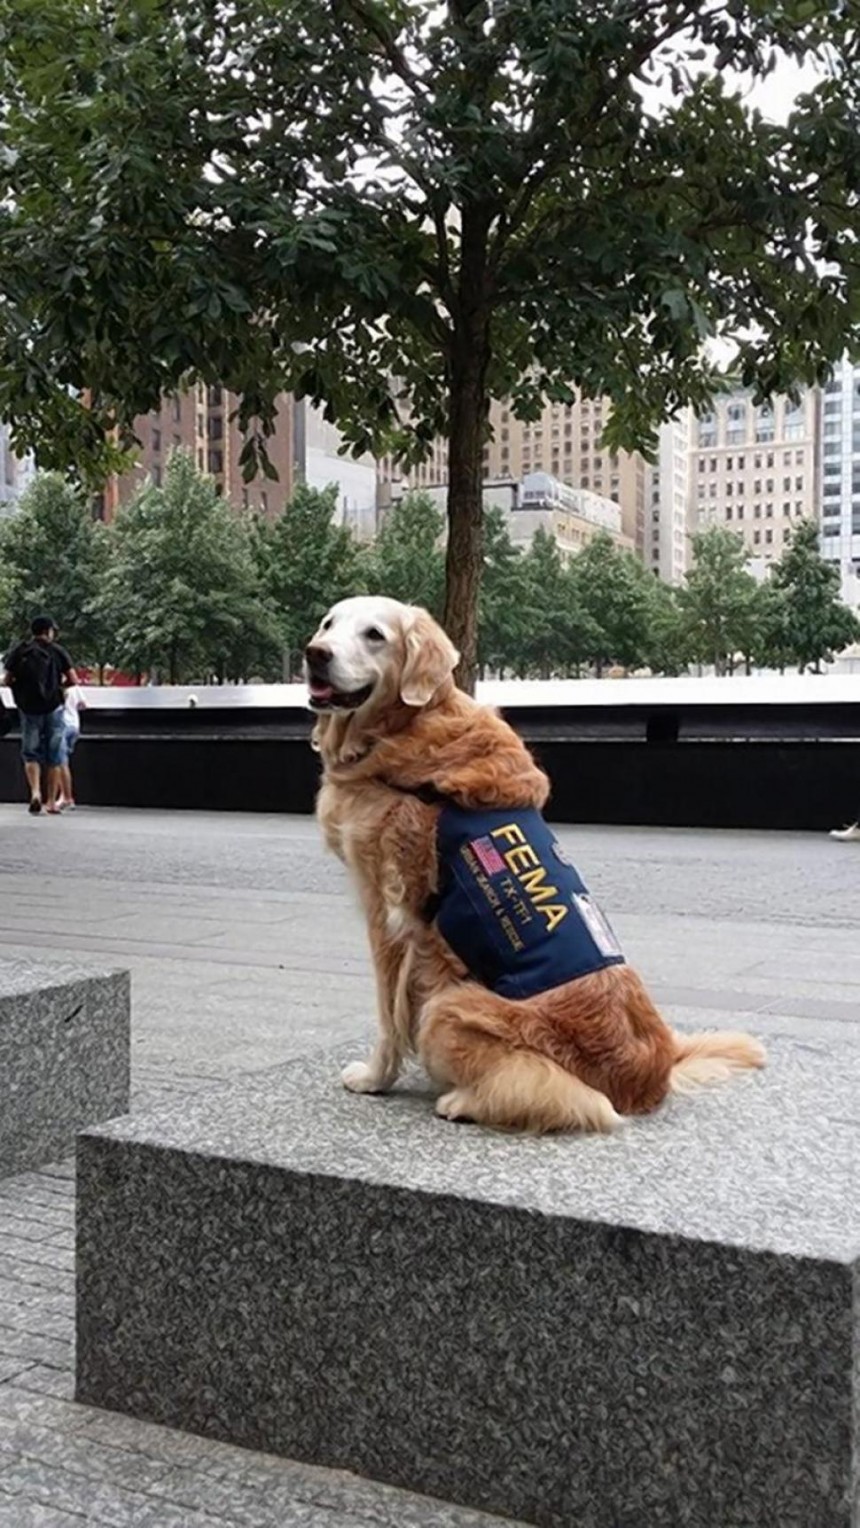 Ενας άγνωστος ήρωας της 11ης Σεπτεμβρίου -Ο σκύλος διασώστης [εικόνες]